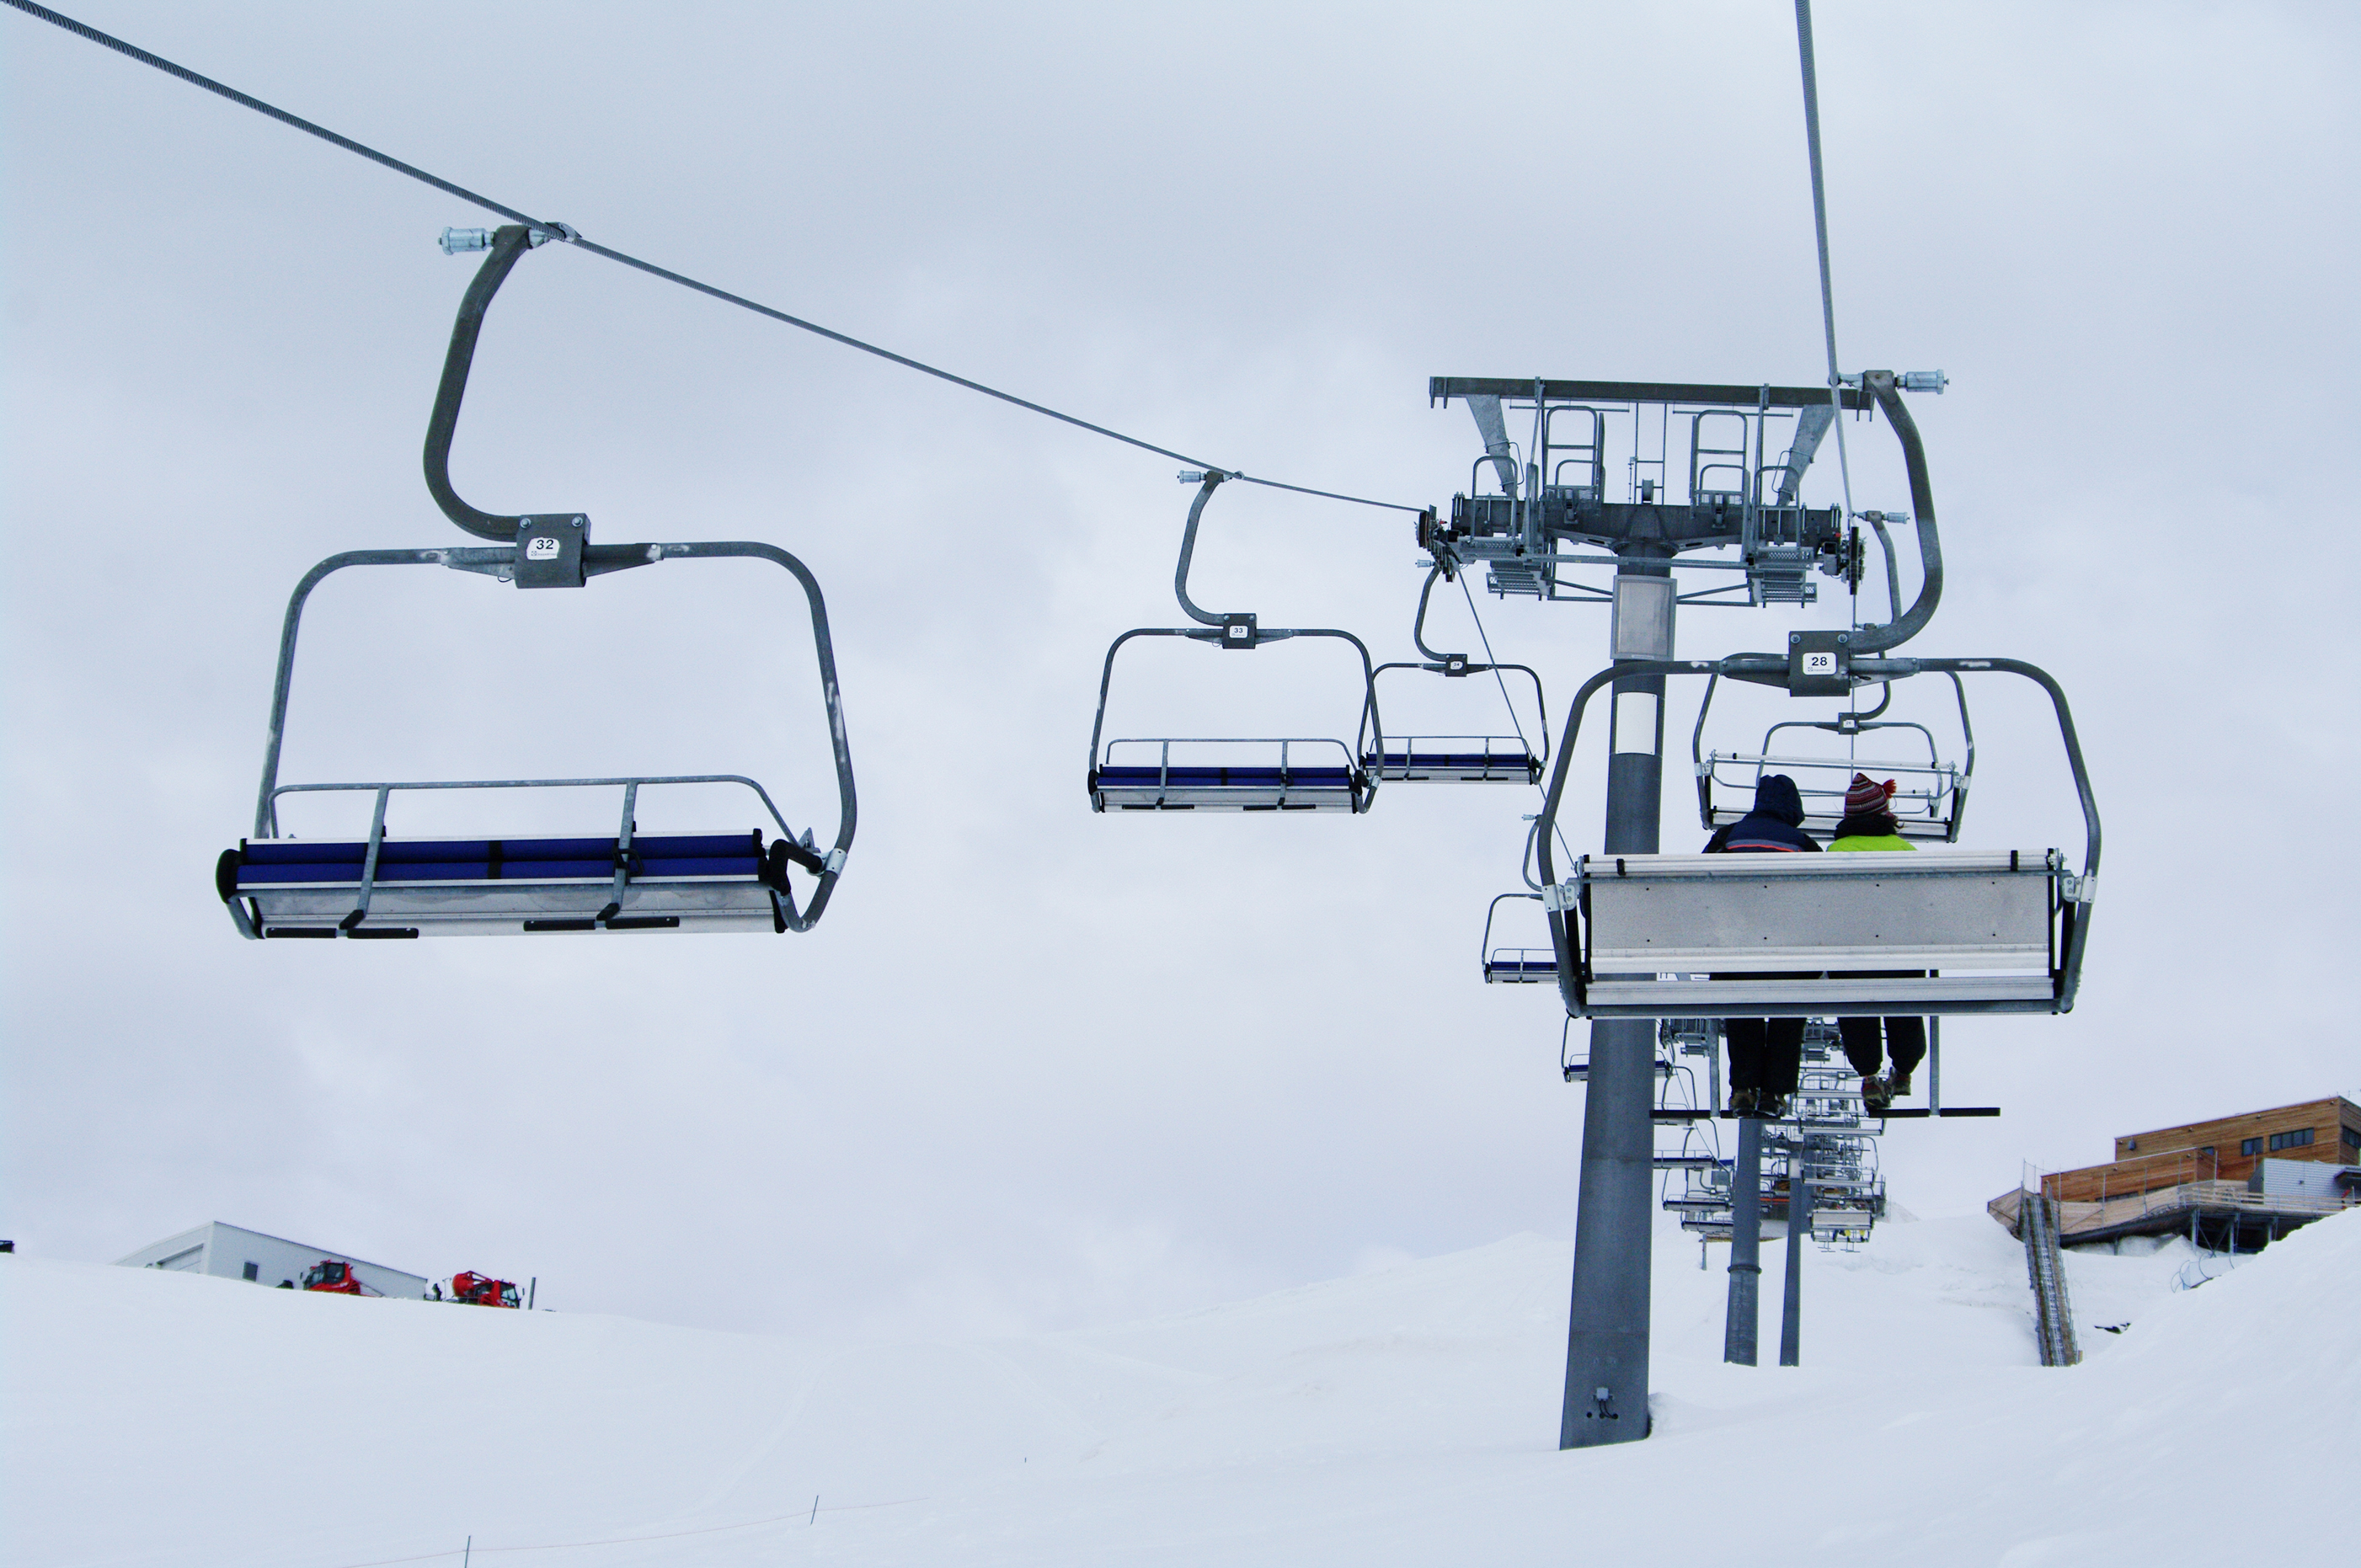 Ski lift in the mountains photo